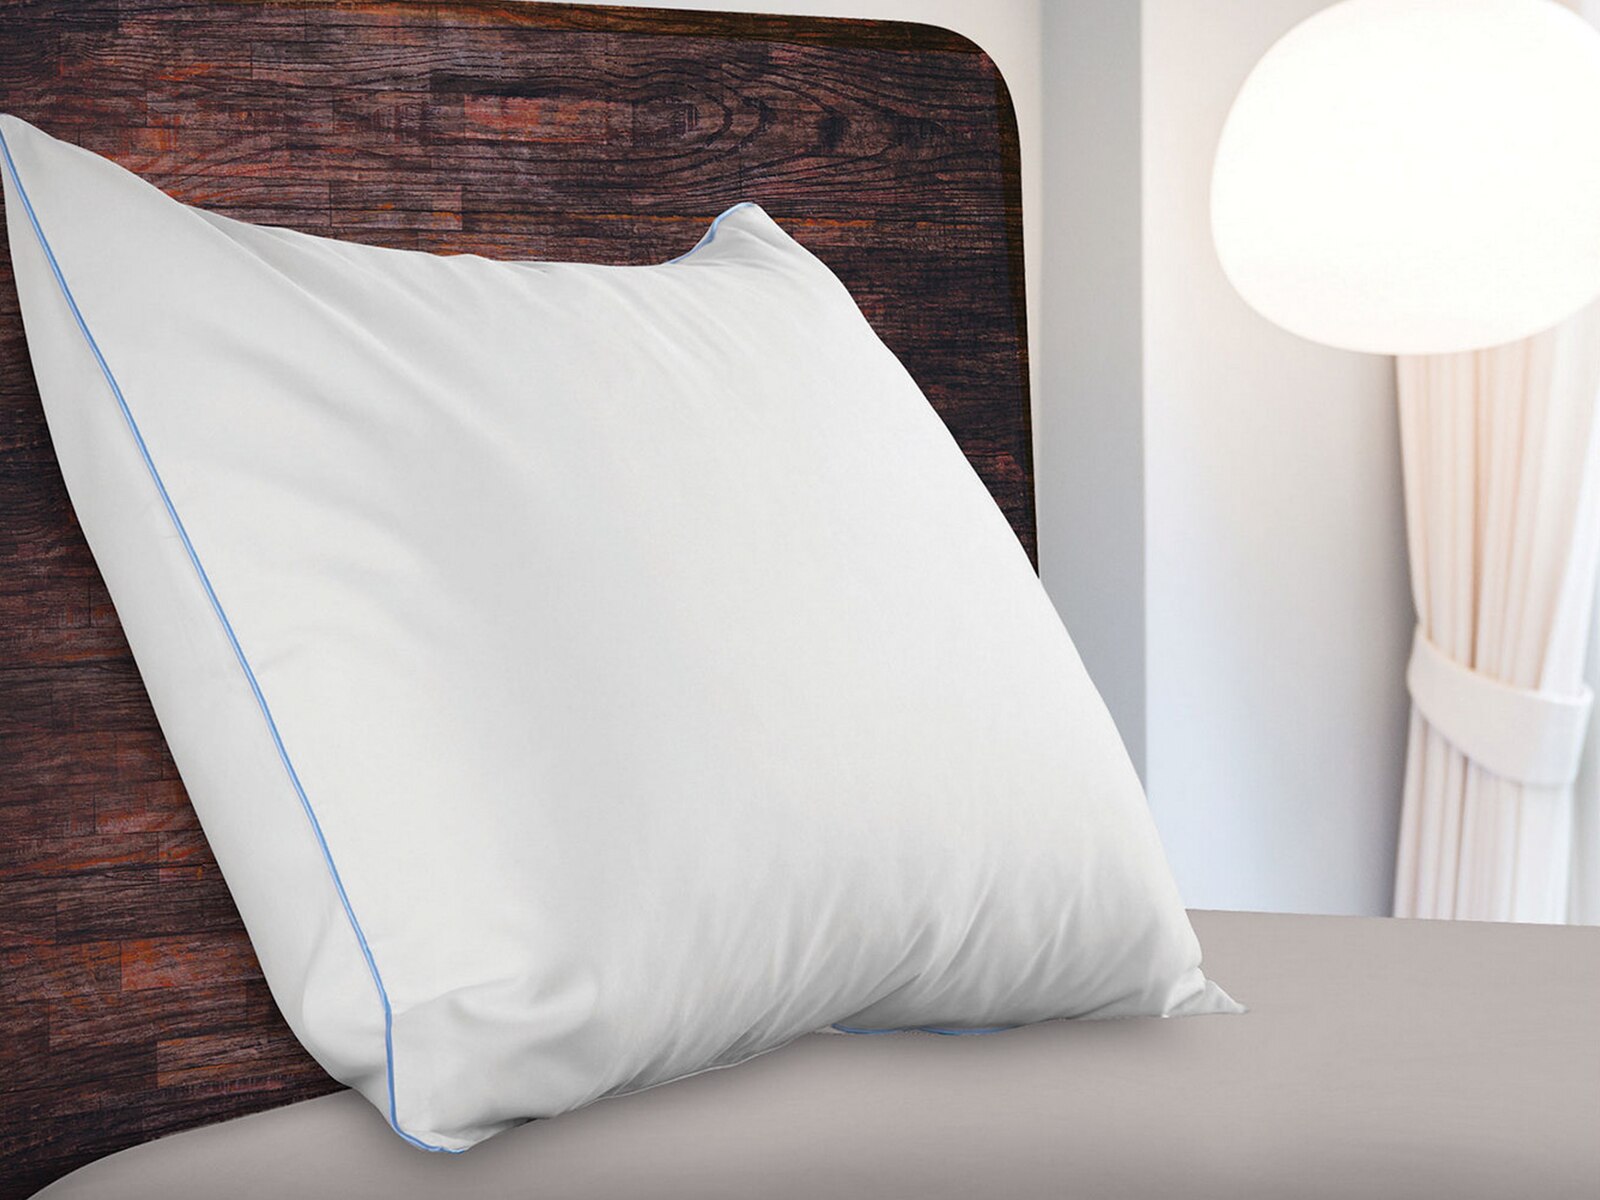 sealy cool comfort crib mattress pad reviews